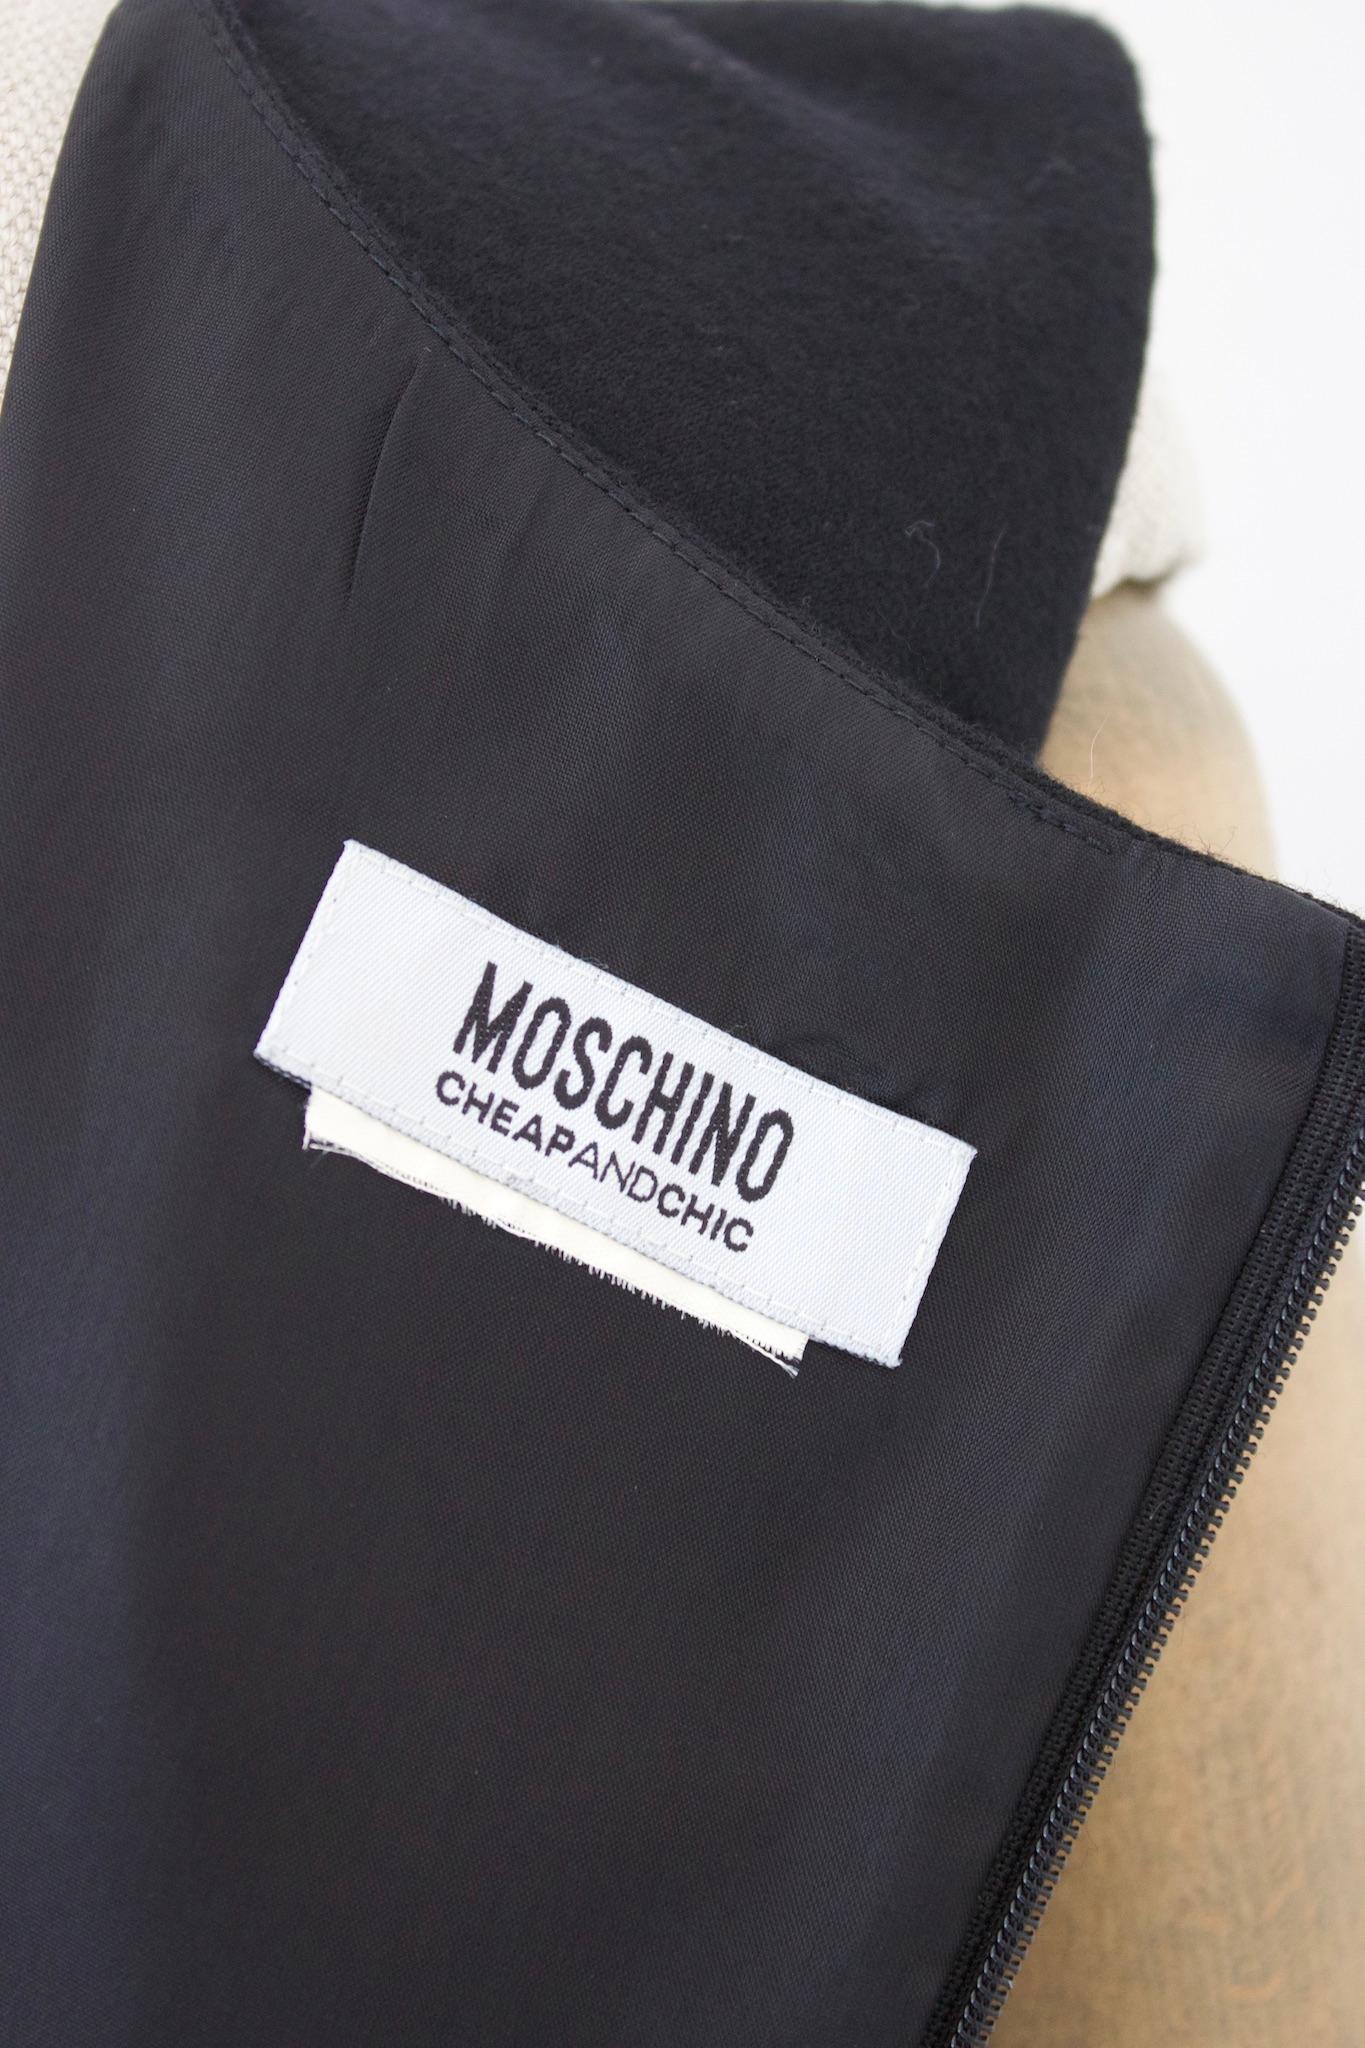 La robe fourreau noire vintage des années 2000 de Moschino Cheap and Chic est une pièce intemporelle confectionnée en laine de haute qualité. La robe est élégante et sophistiquée, avec un design simple mais classique qui ne se démodera jamais.